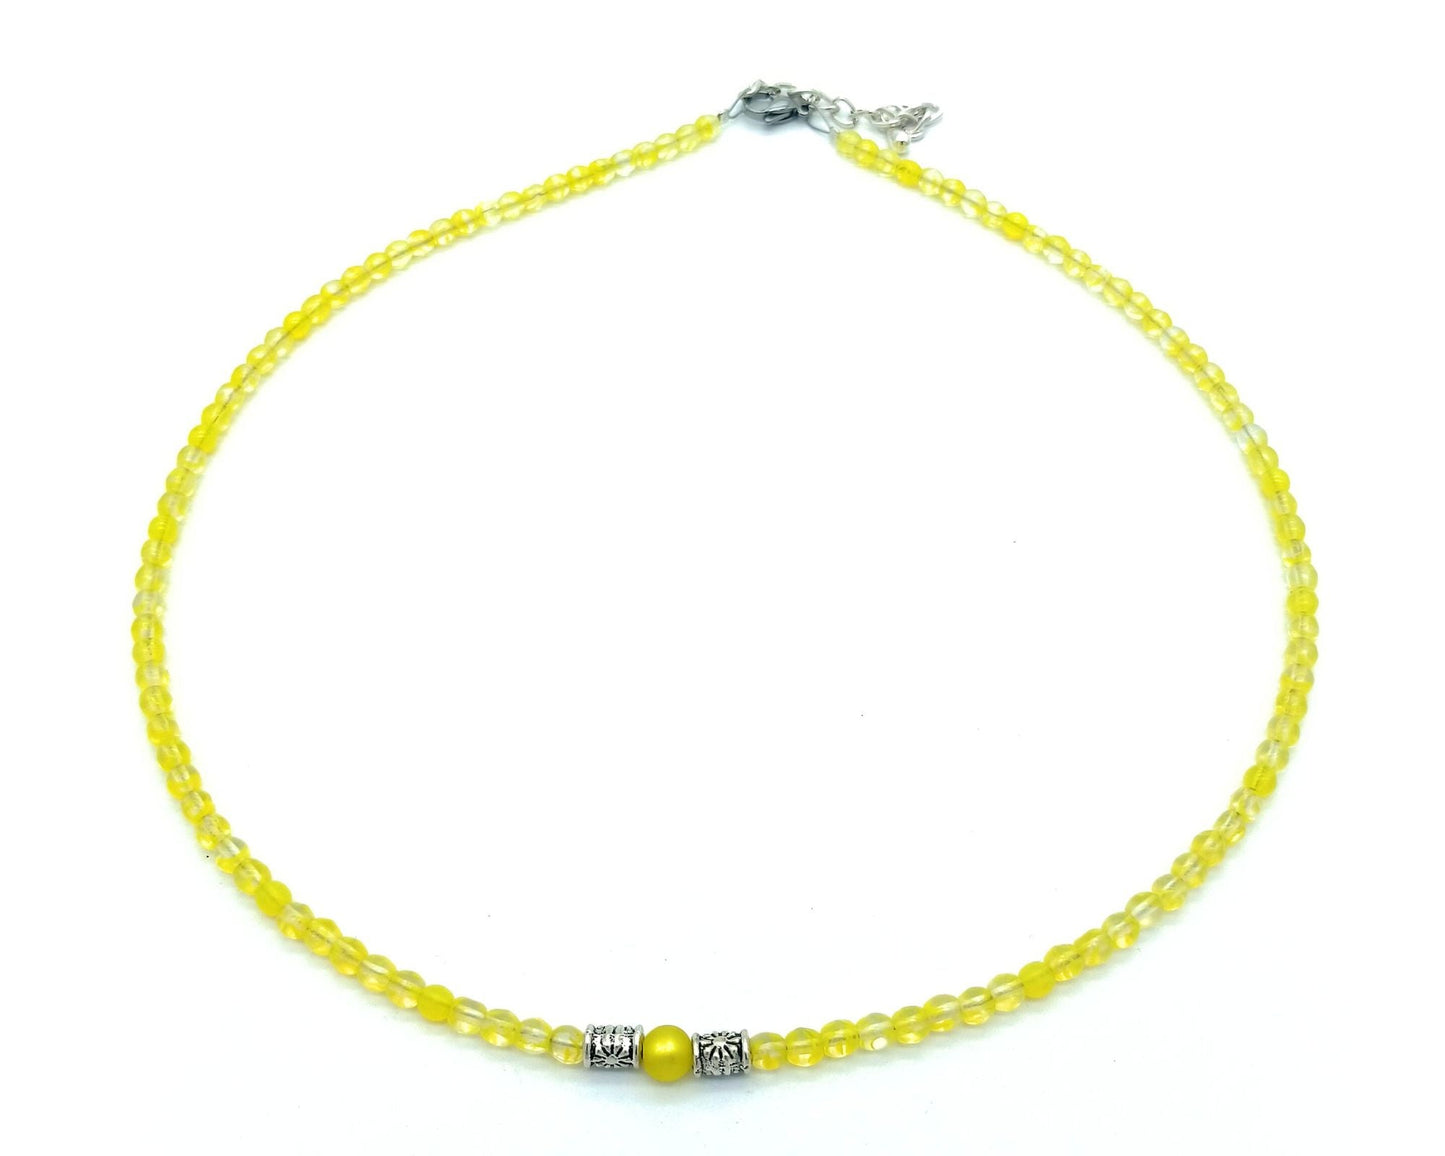 perleperle Modeschmuck handgefertigt K523 Polariskette - mit böhmischen Glasperlen, 4 mm 11 uni gelb